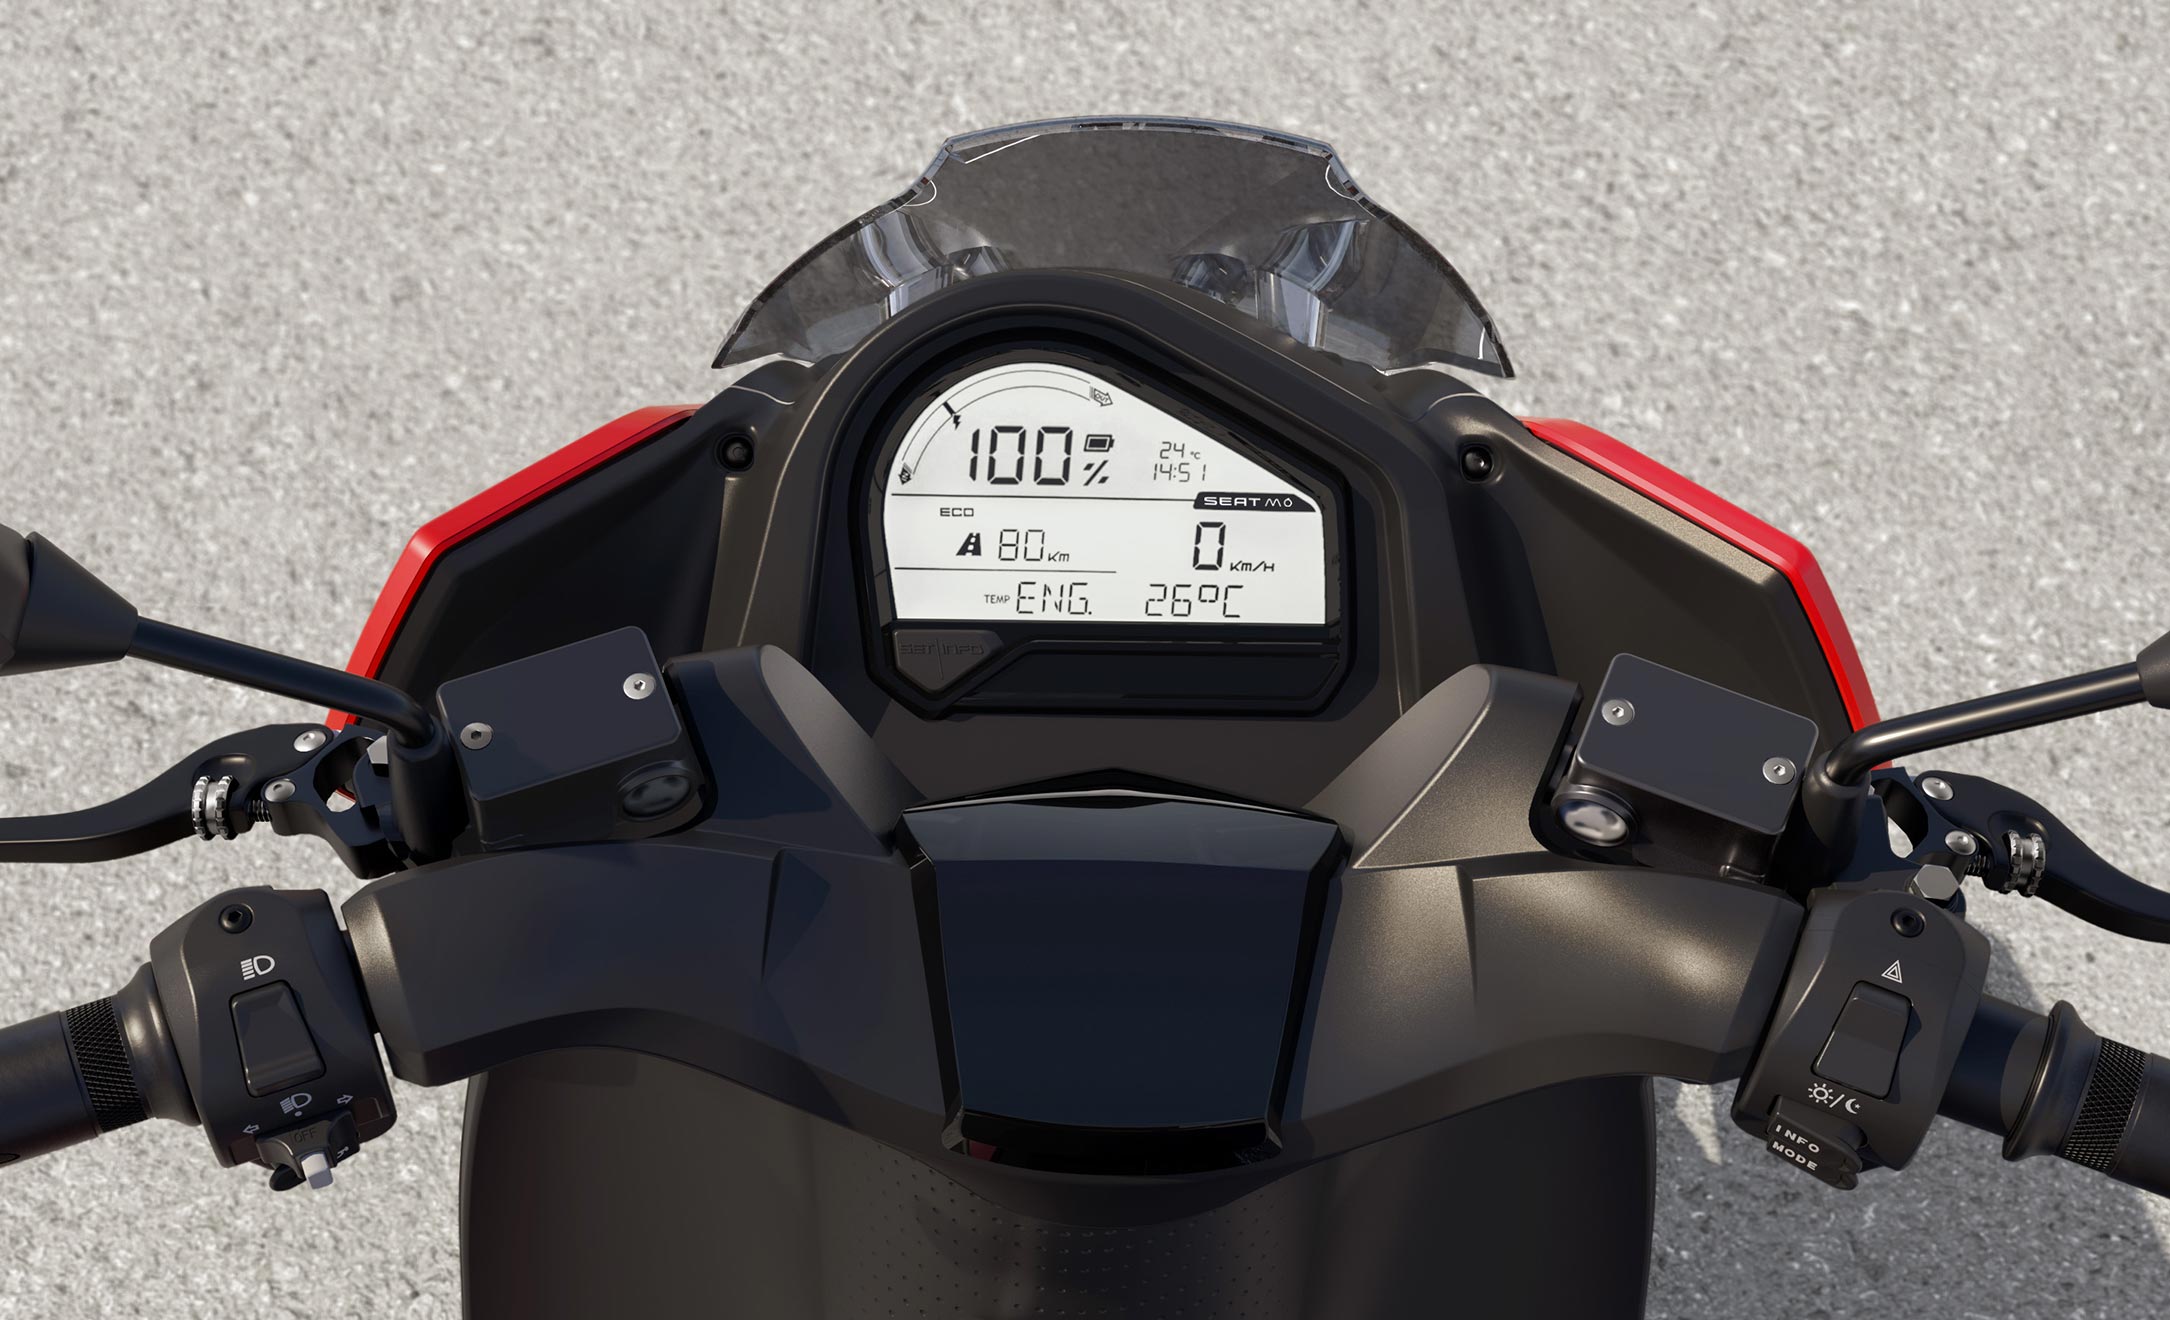 Motociclo elettrico SEAT MÓ eScooter 125, modalità di guida, vista in dettaglio display